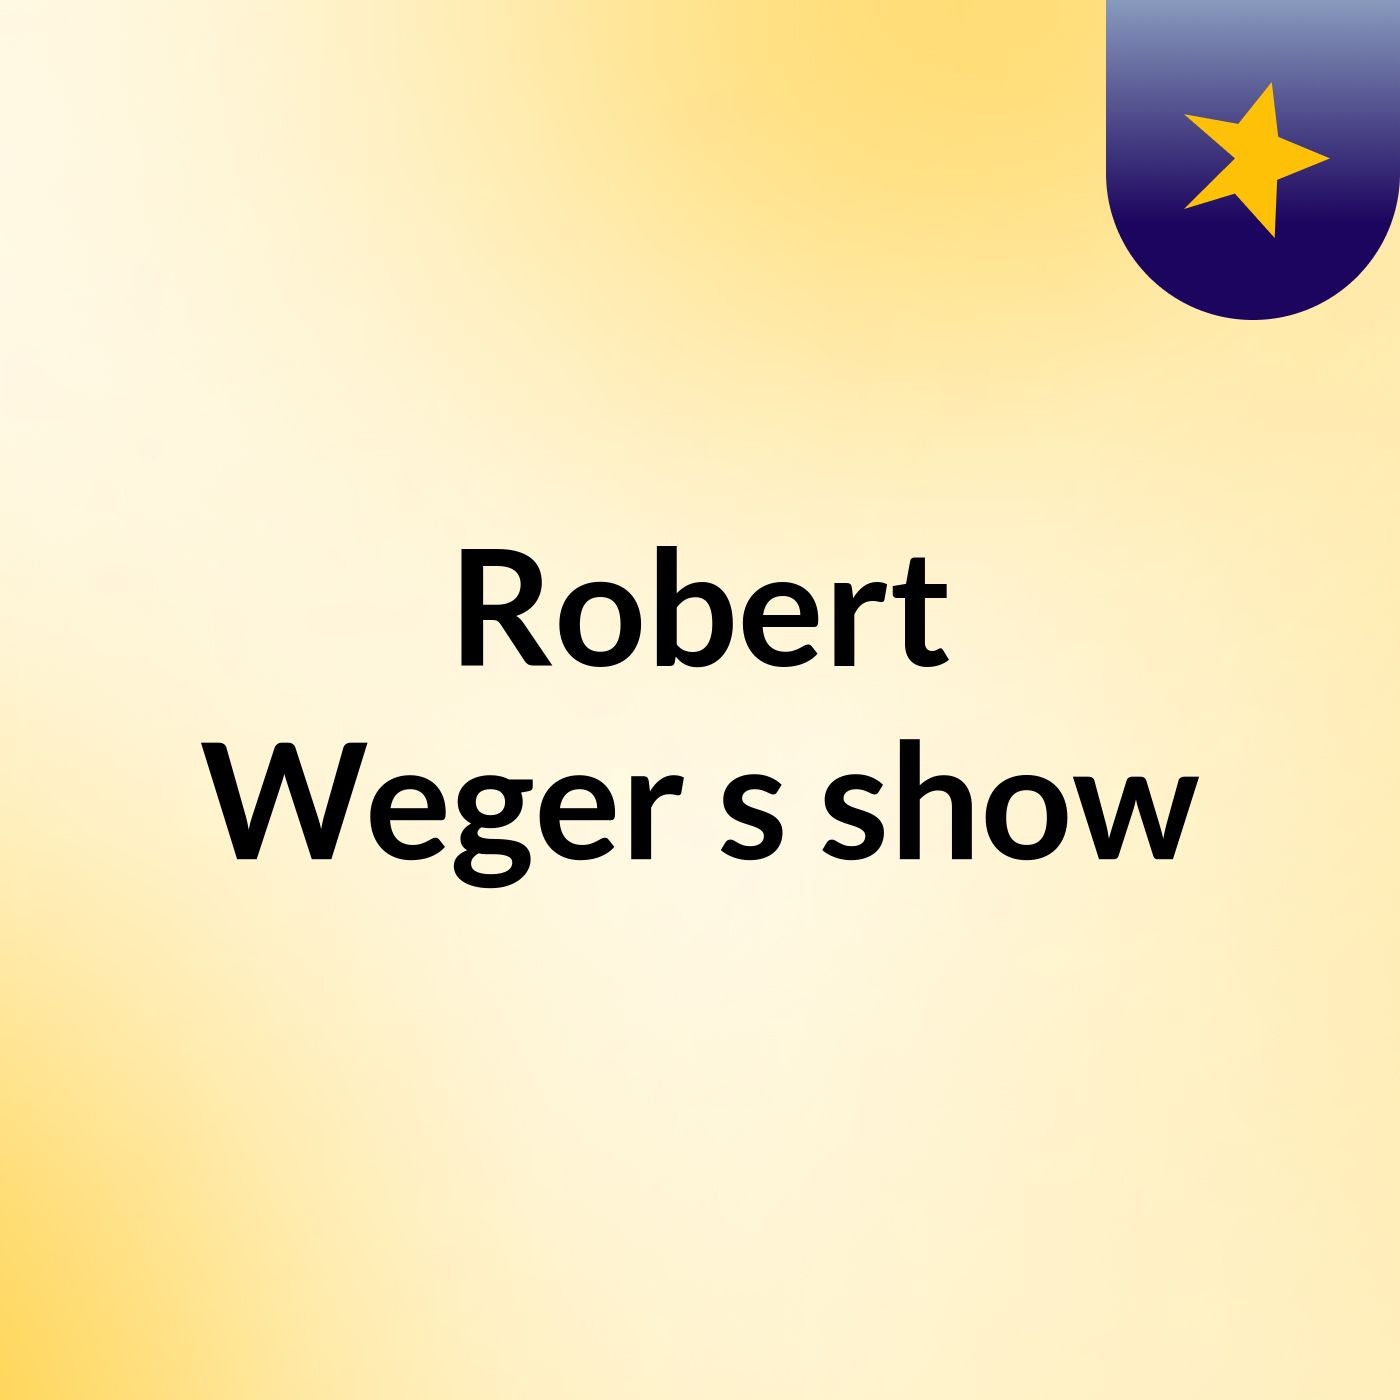 Robert Weger's show